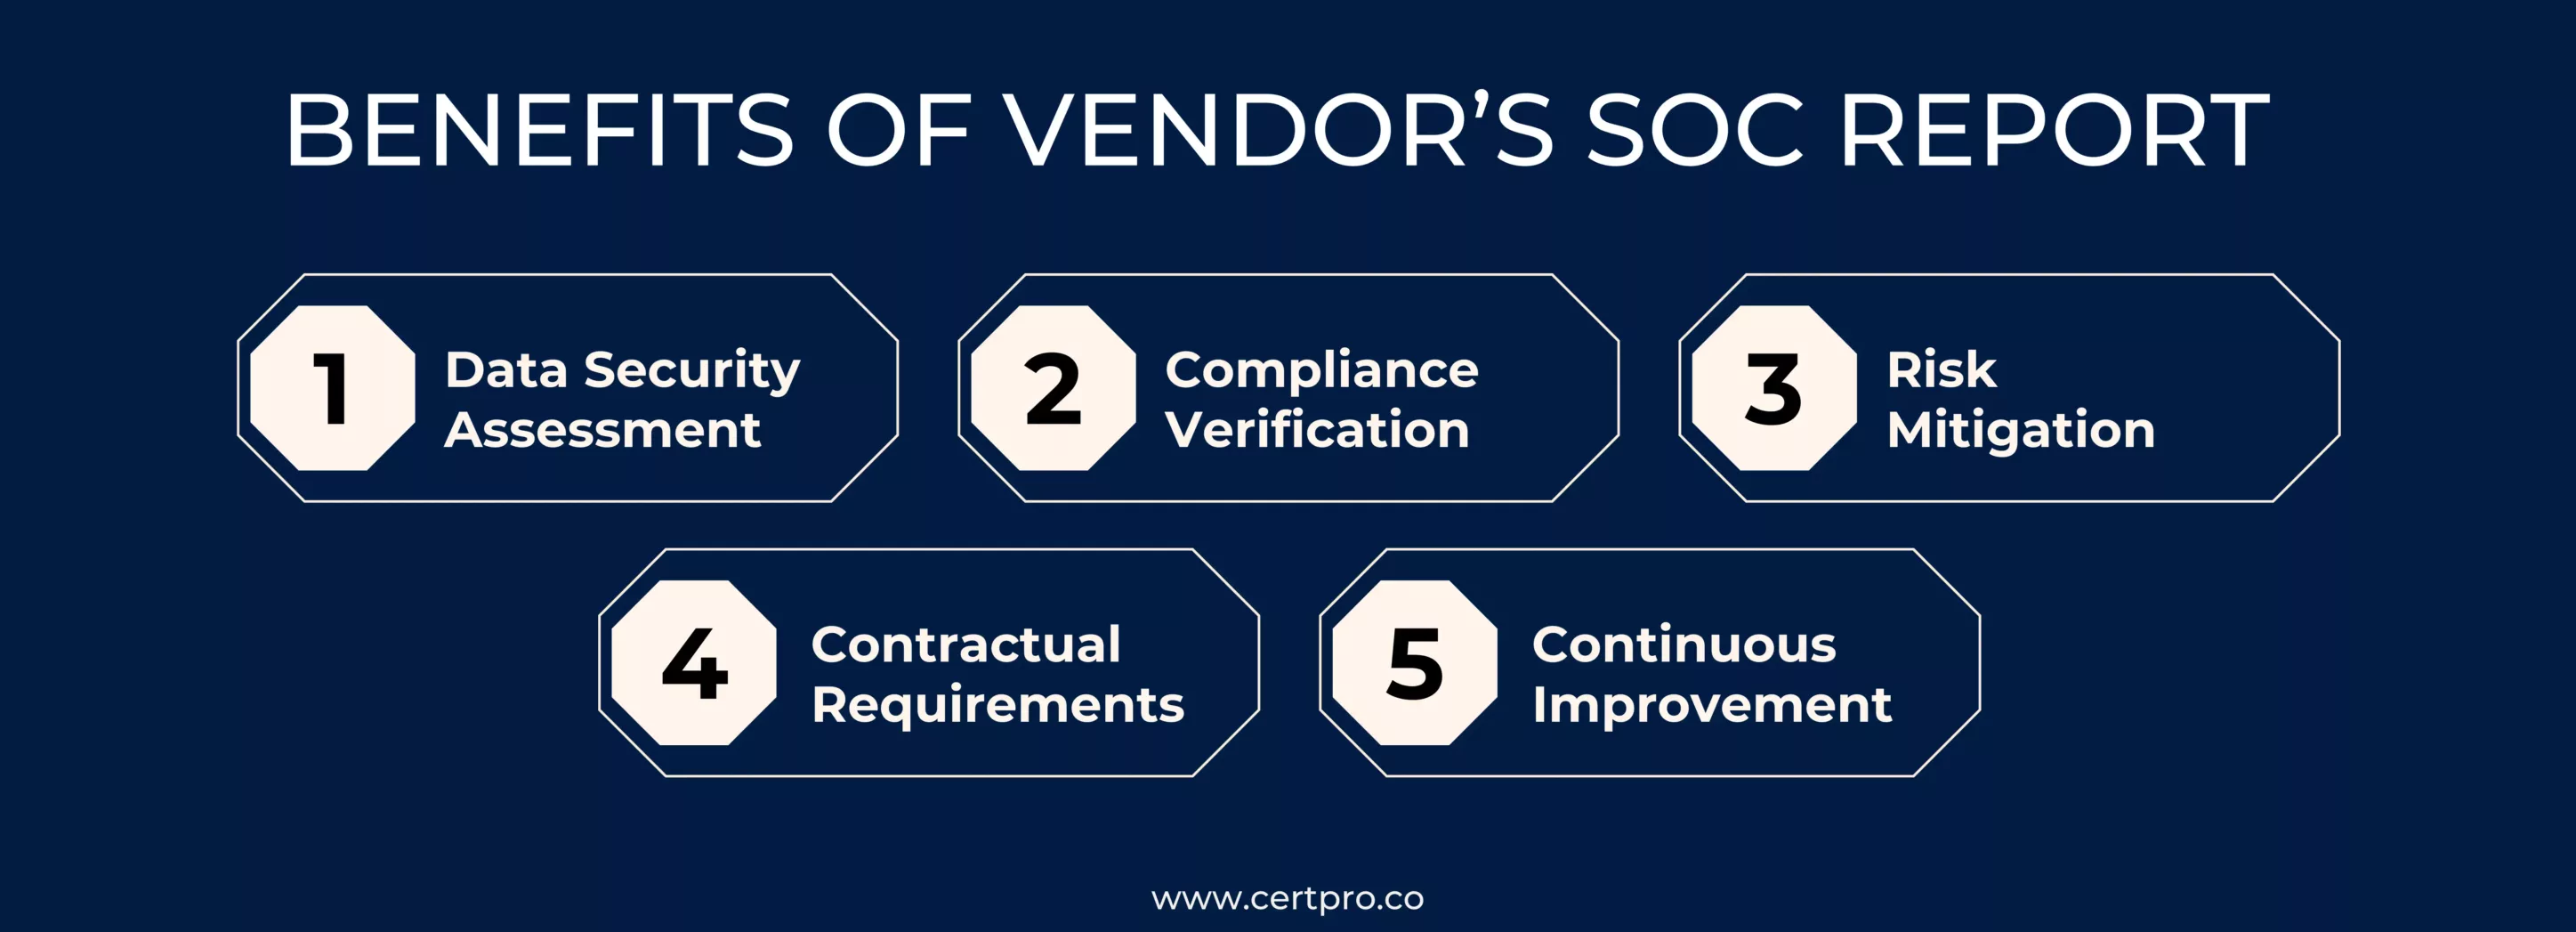 Benefits of SOC 2 vendors